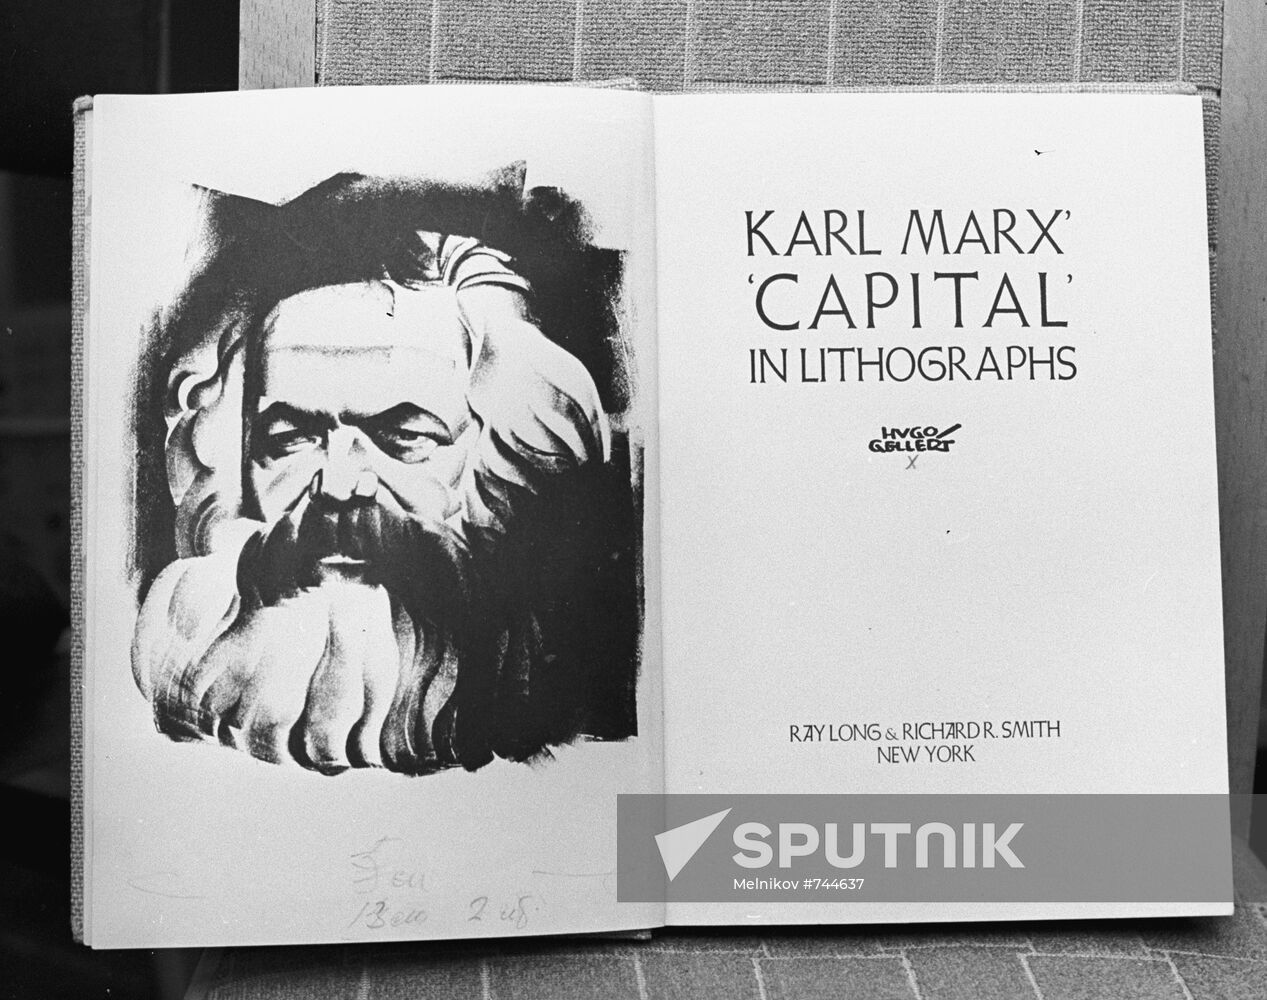 Frontispiece to Karl Marx' Capital